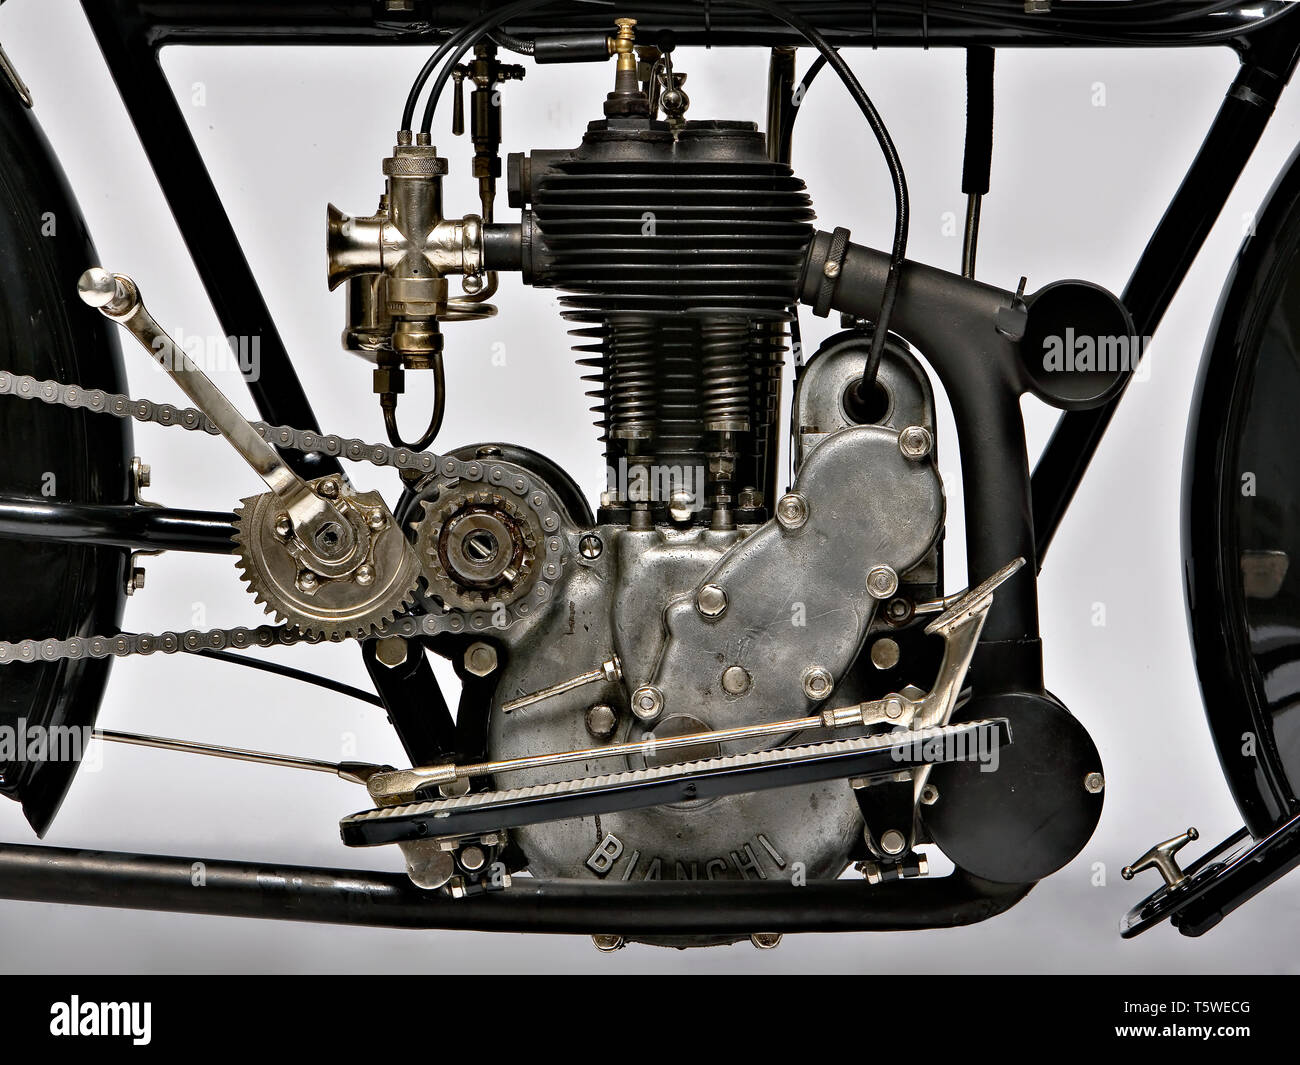 Moto d'epoca Bianchi C 75 A. Motore.  fabbrica: Bianchi modello: C 75 A  fabbricata in: Italia - Milano anno: 1914 condizioni: restaura Stock Photo